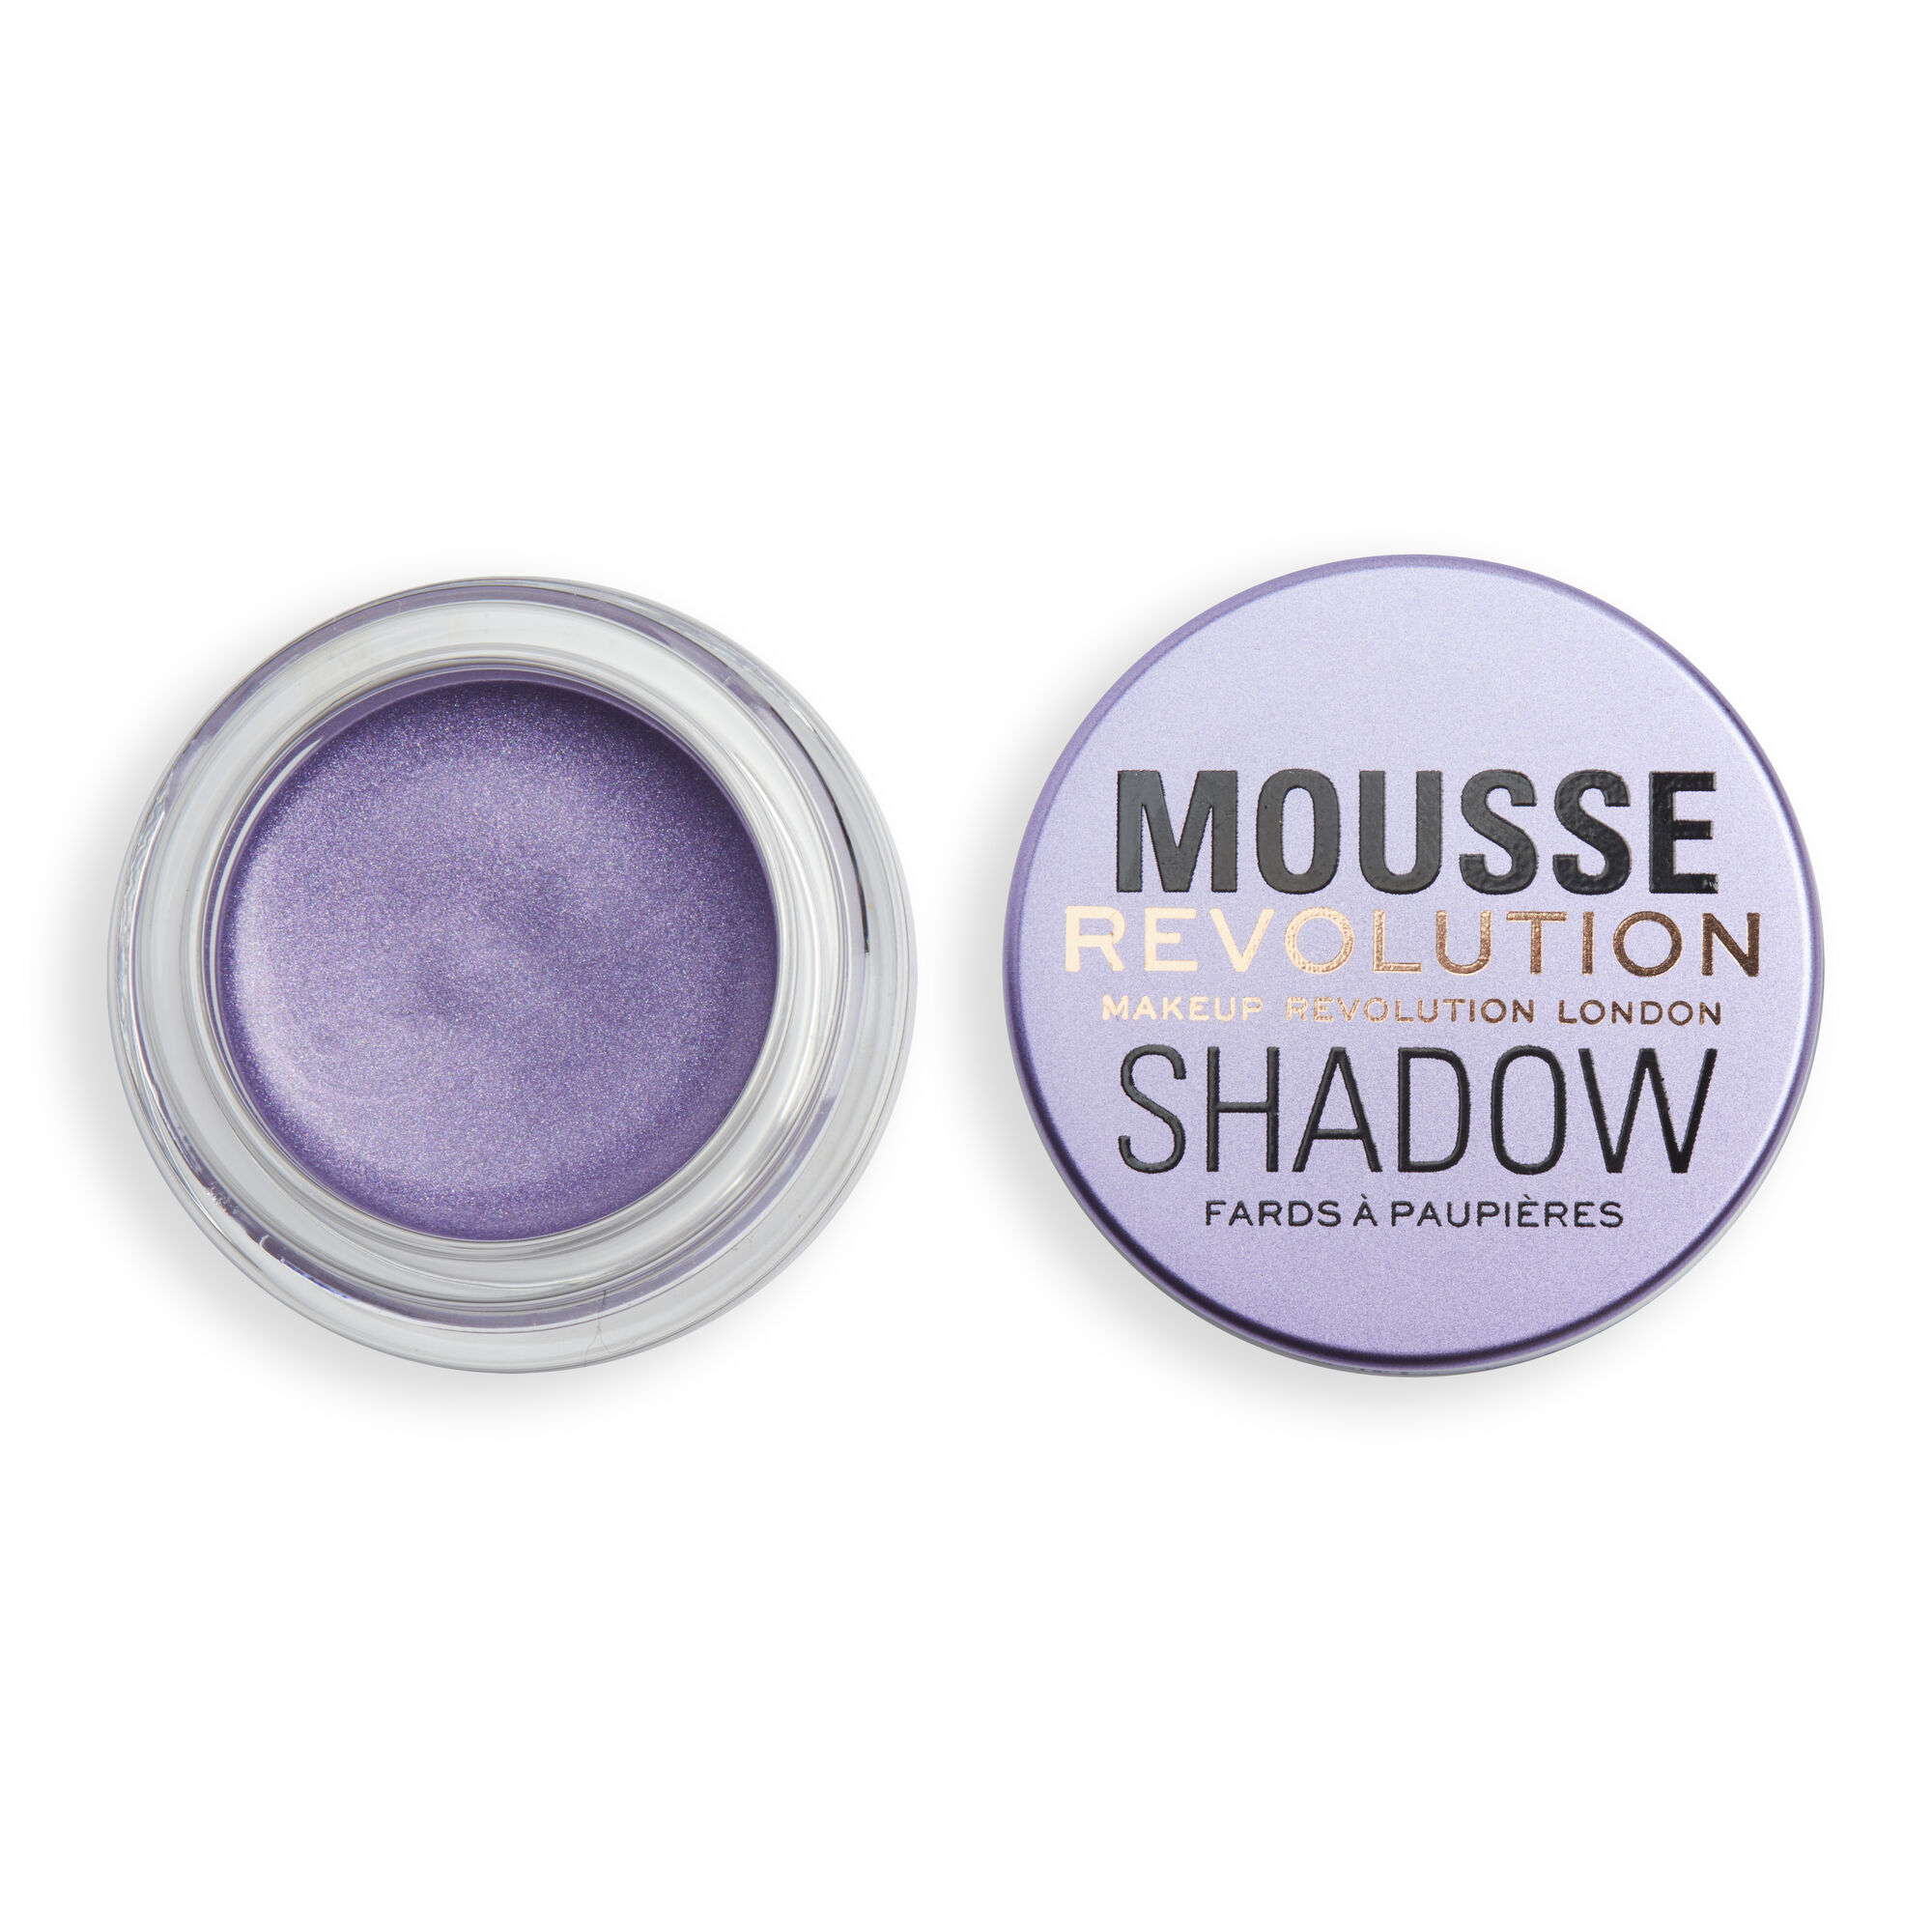 Тени Revolution Makeup кремовые для век Mousse Cream Eyeshadow, Lilac la rosa тени для век 8 makeup studio